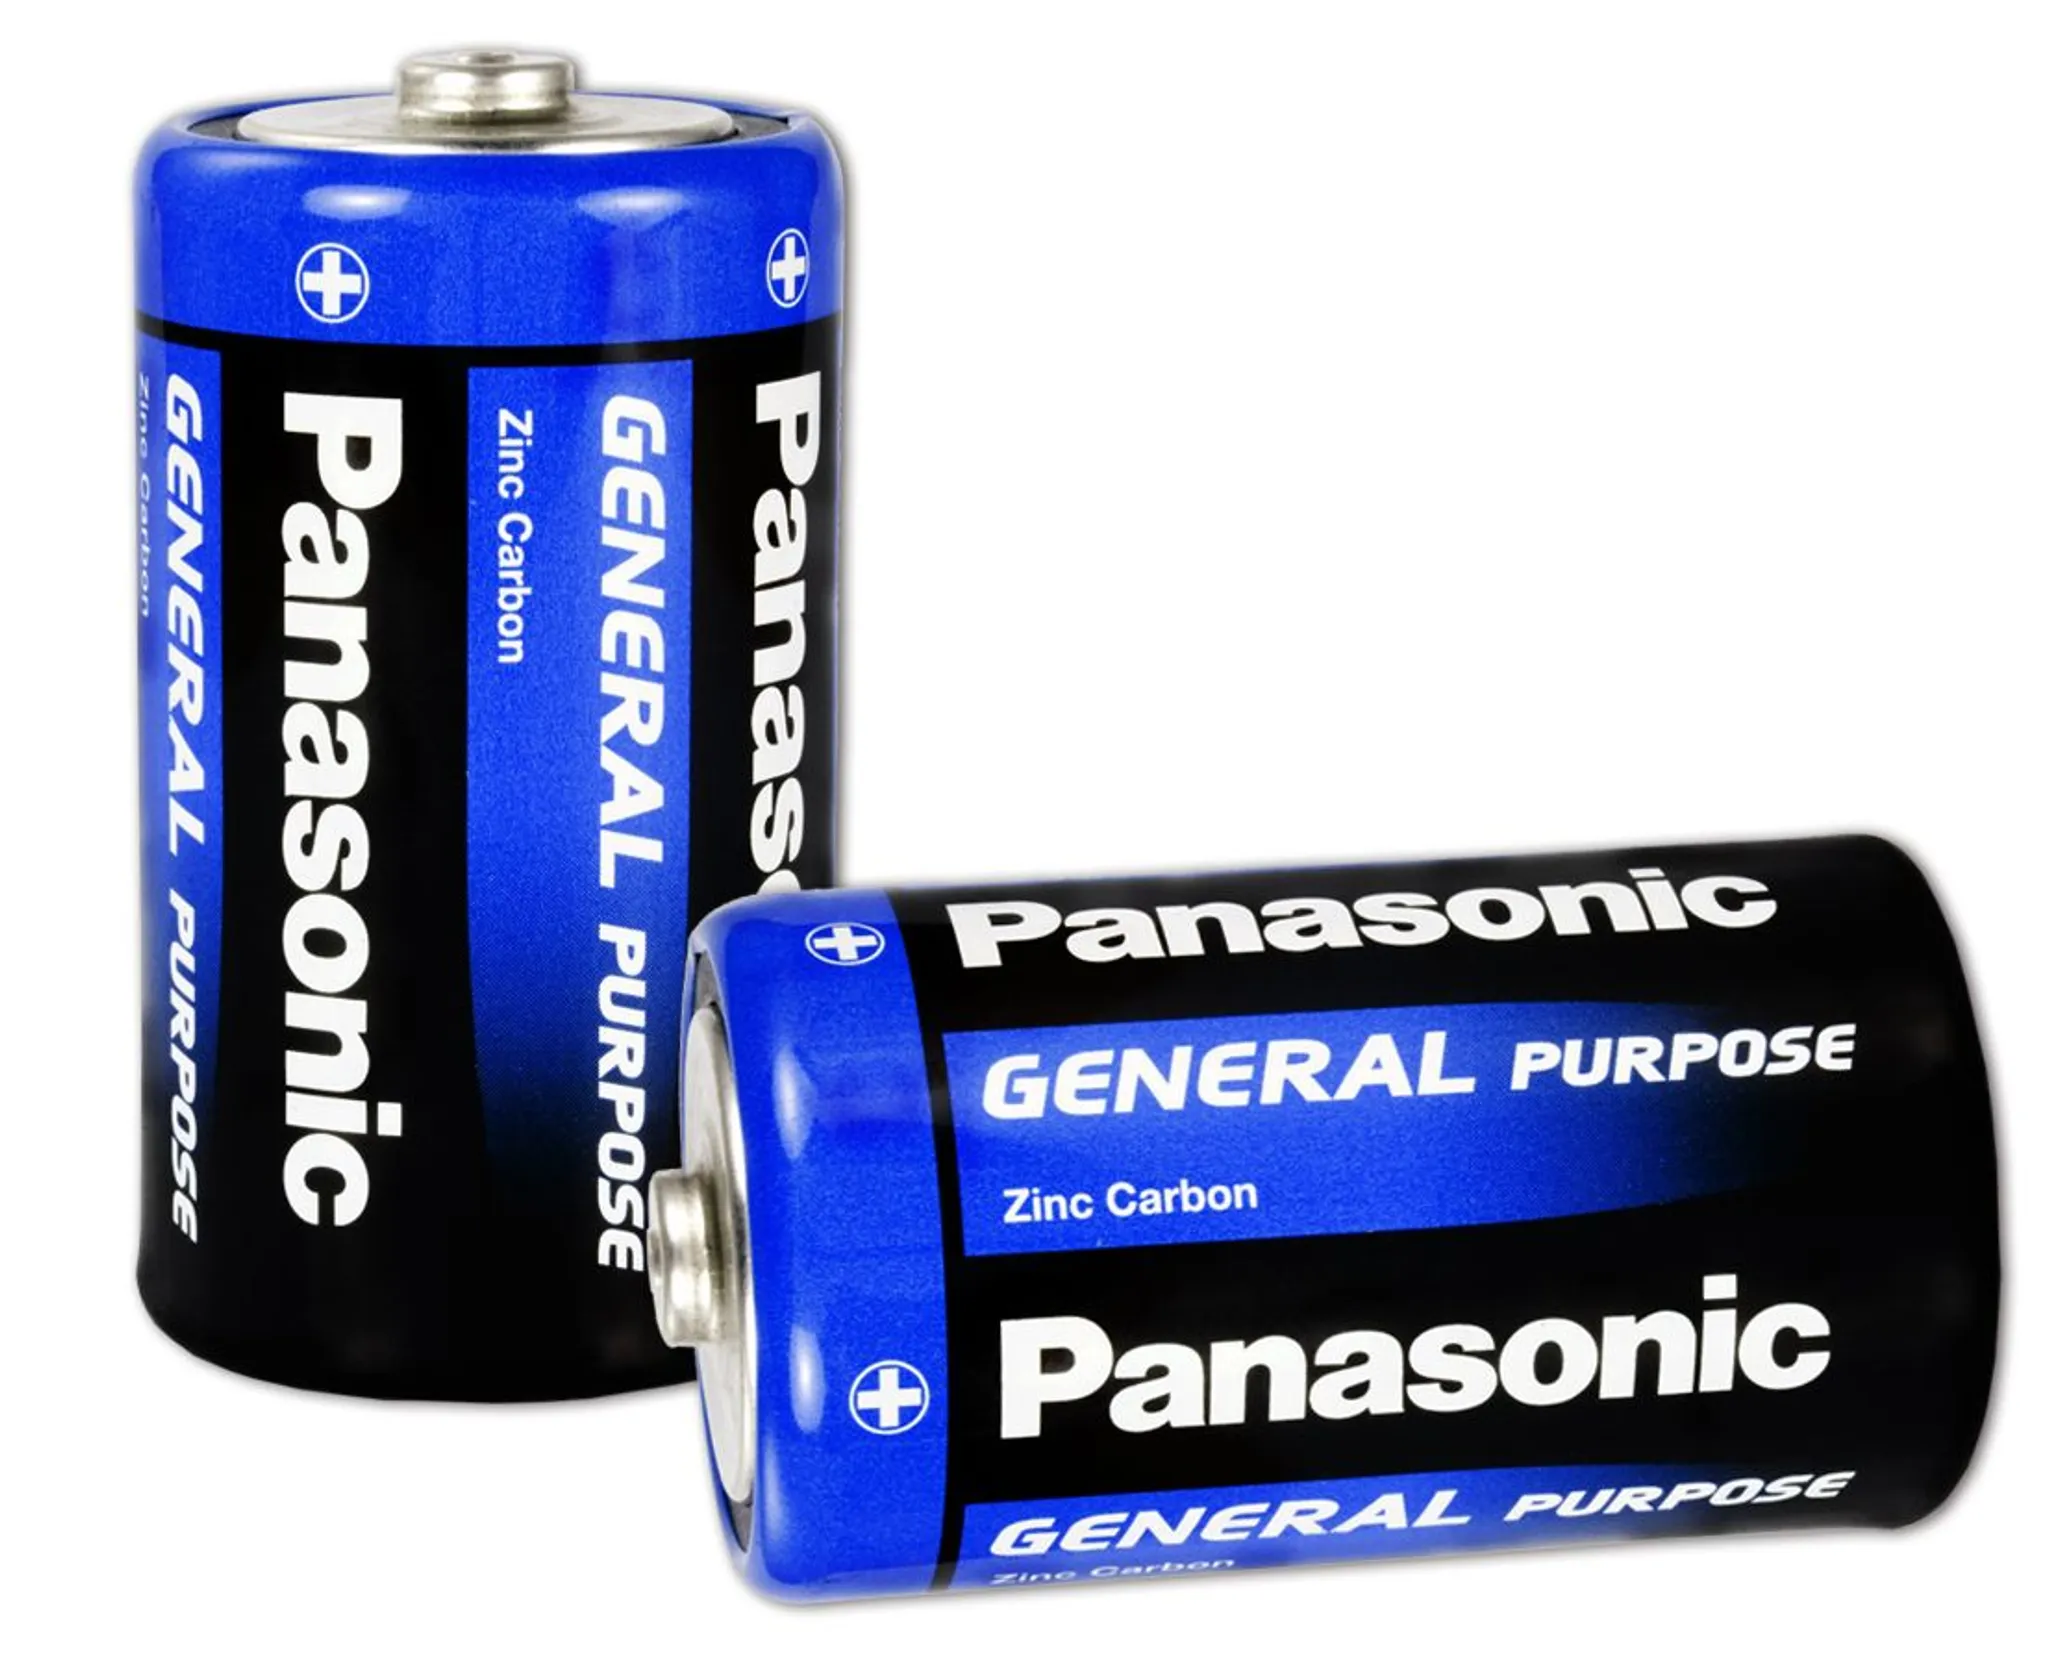 Batteriefach für R20 Batterien, 1,25 €